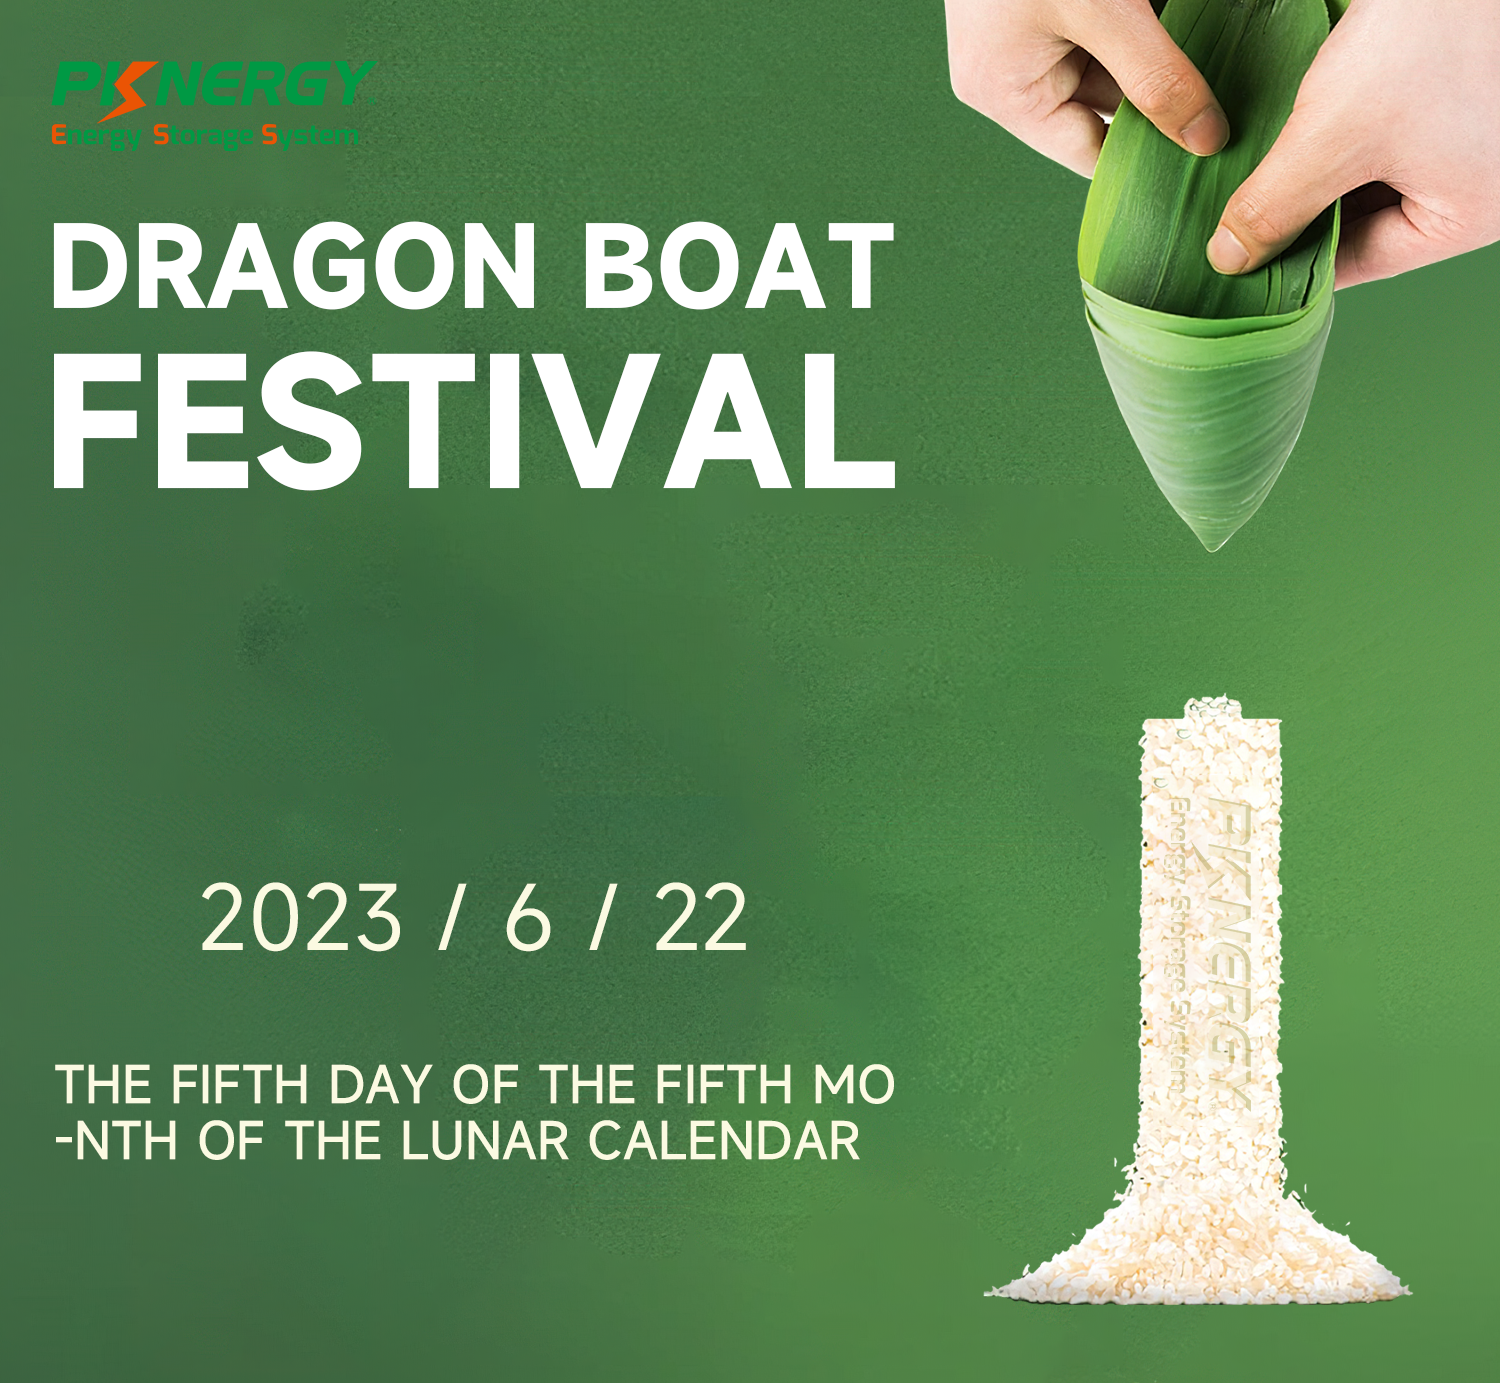 Pknergy célèbre le festival des bateaux-dragons !